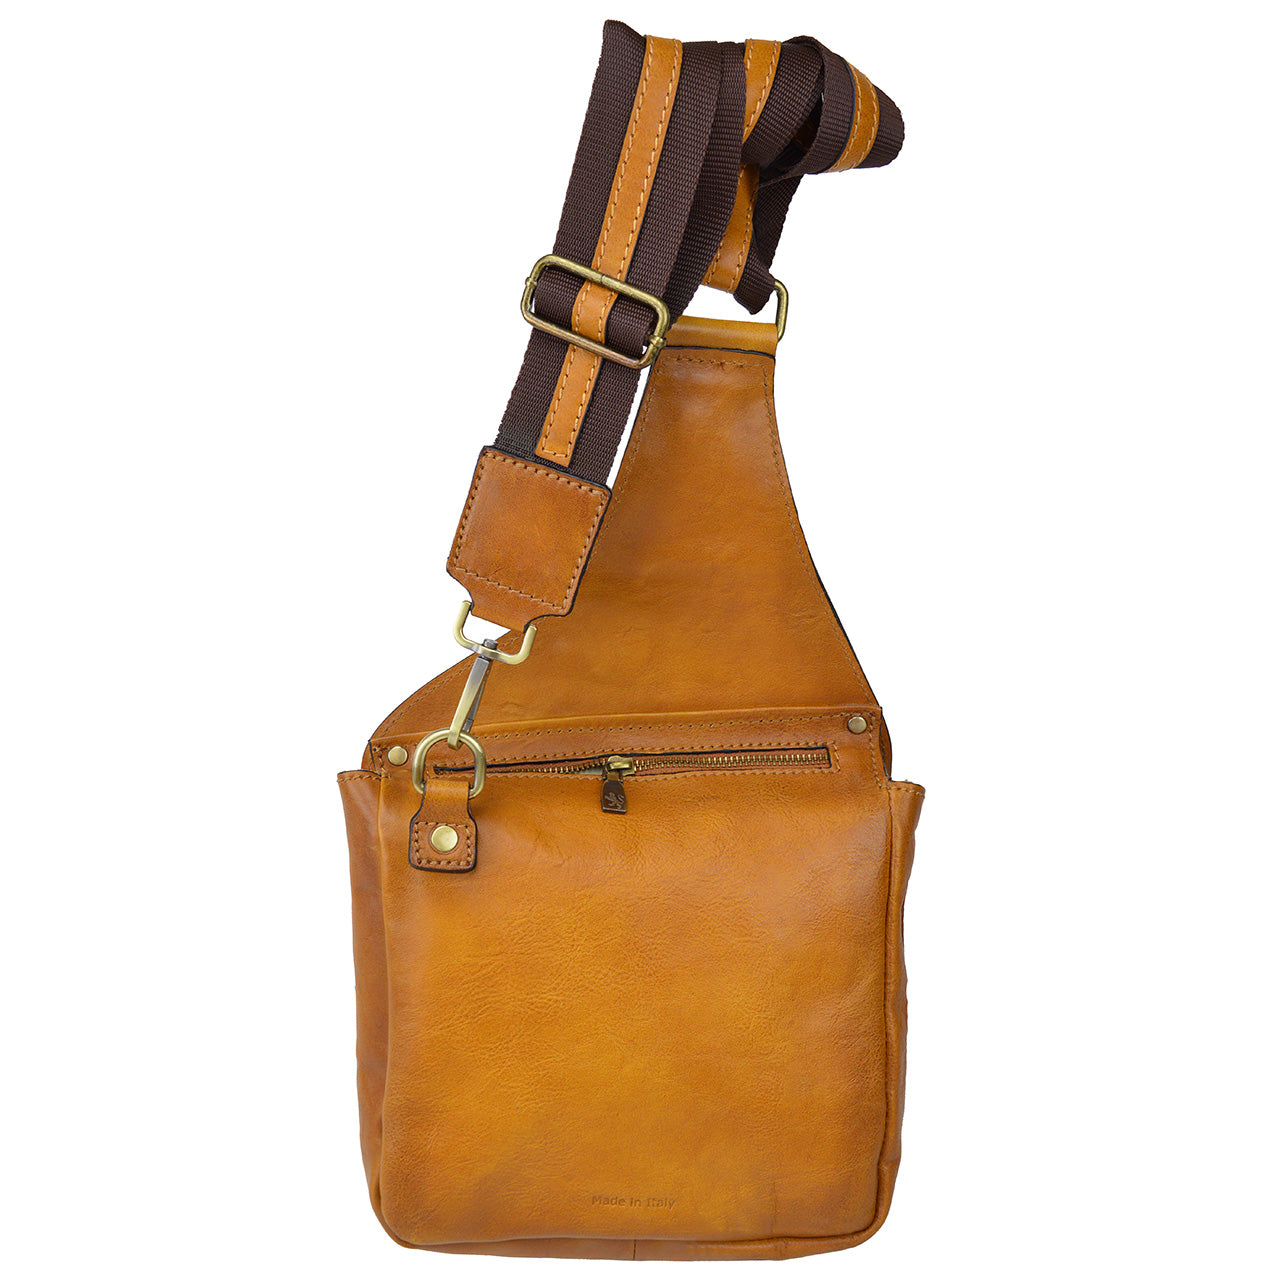 Pratesi Bisaccia Bag in genuine Italian leather